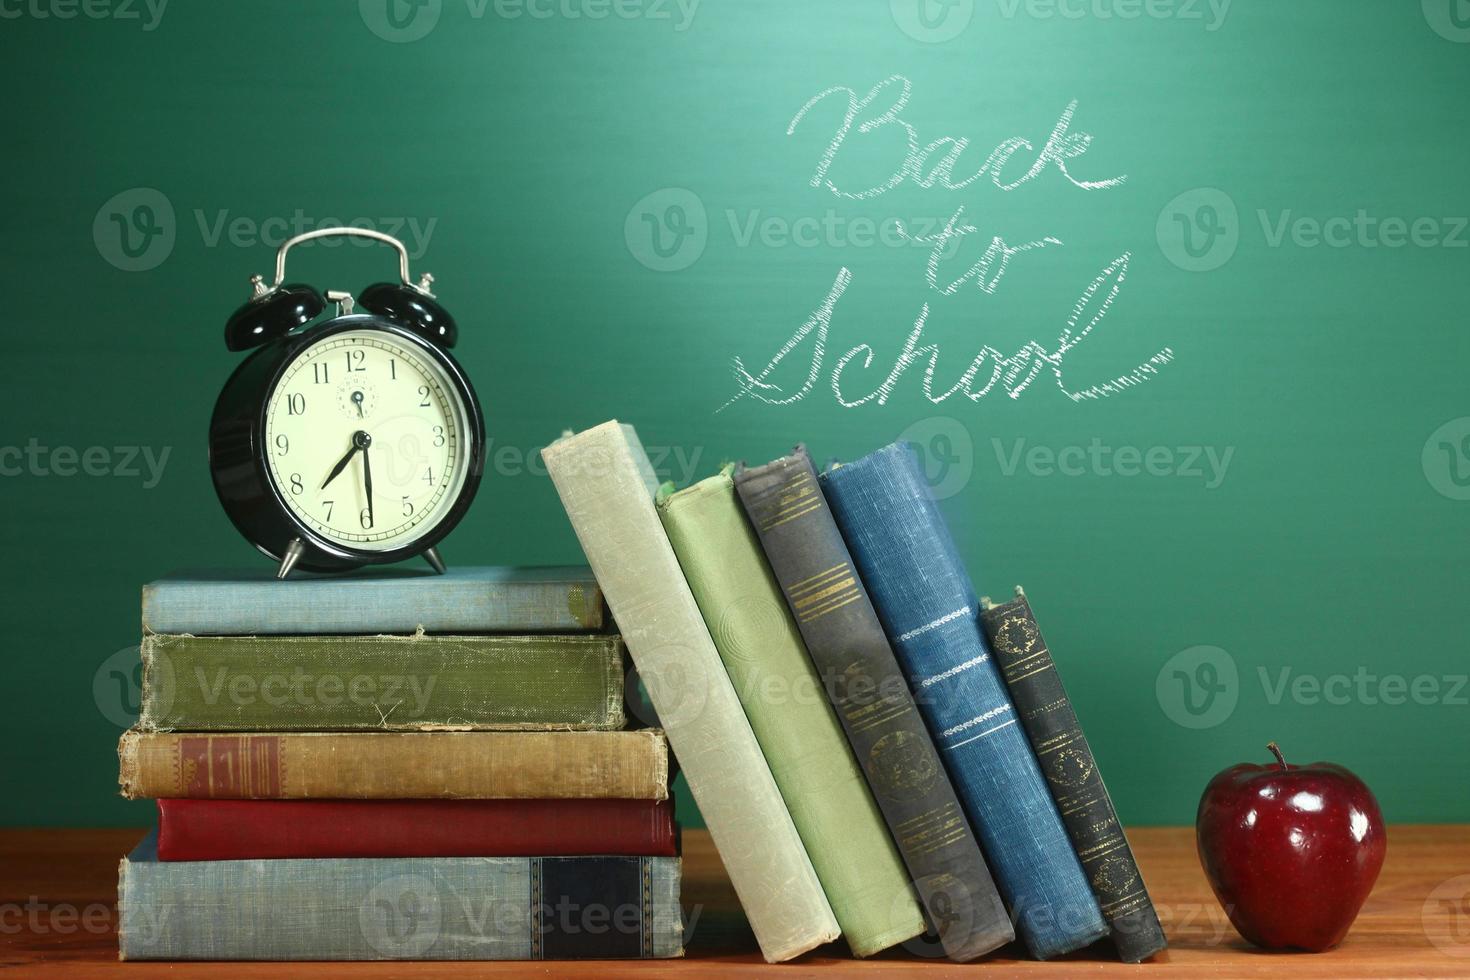 libros escolares, manzana y reloj en el escritorio en la escuela foto